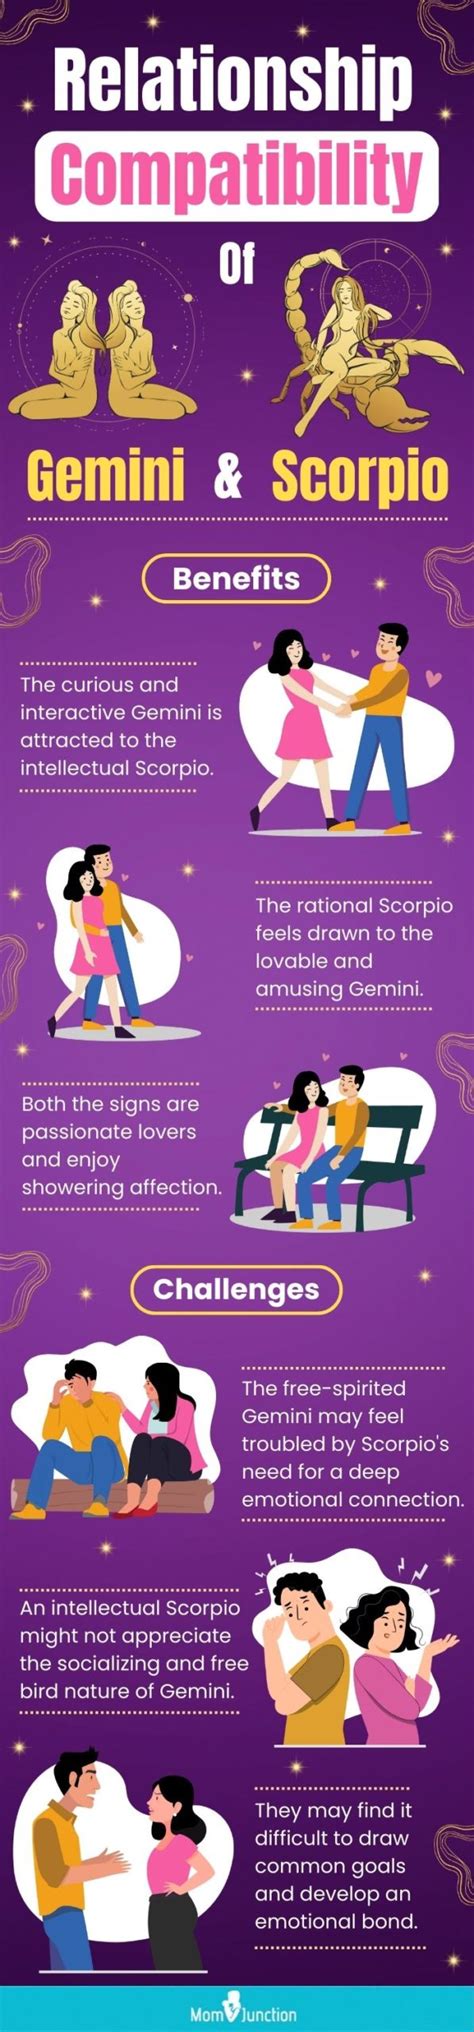 Gemini And Scorpio Love And Friendship Compatibility